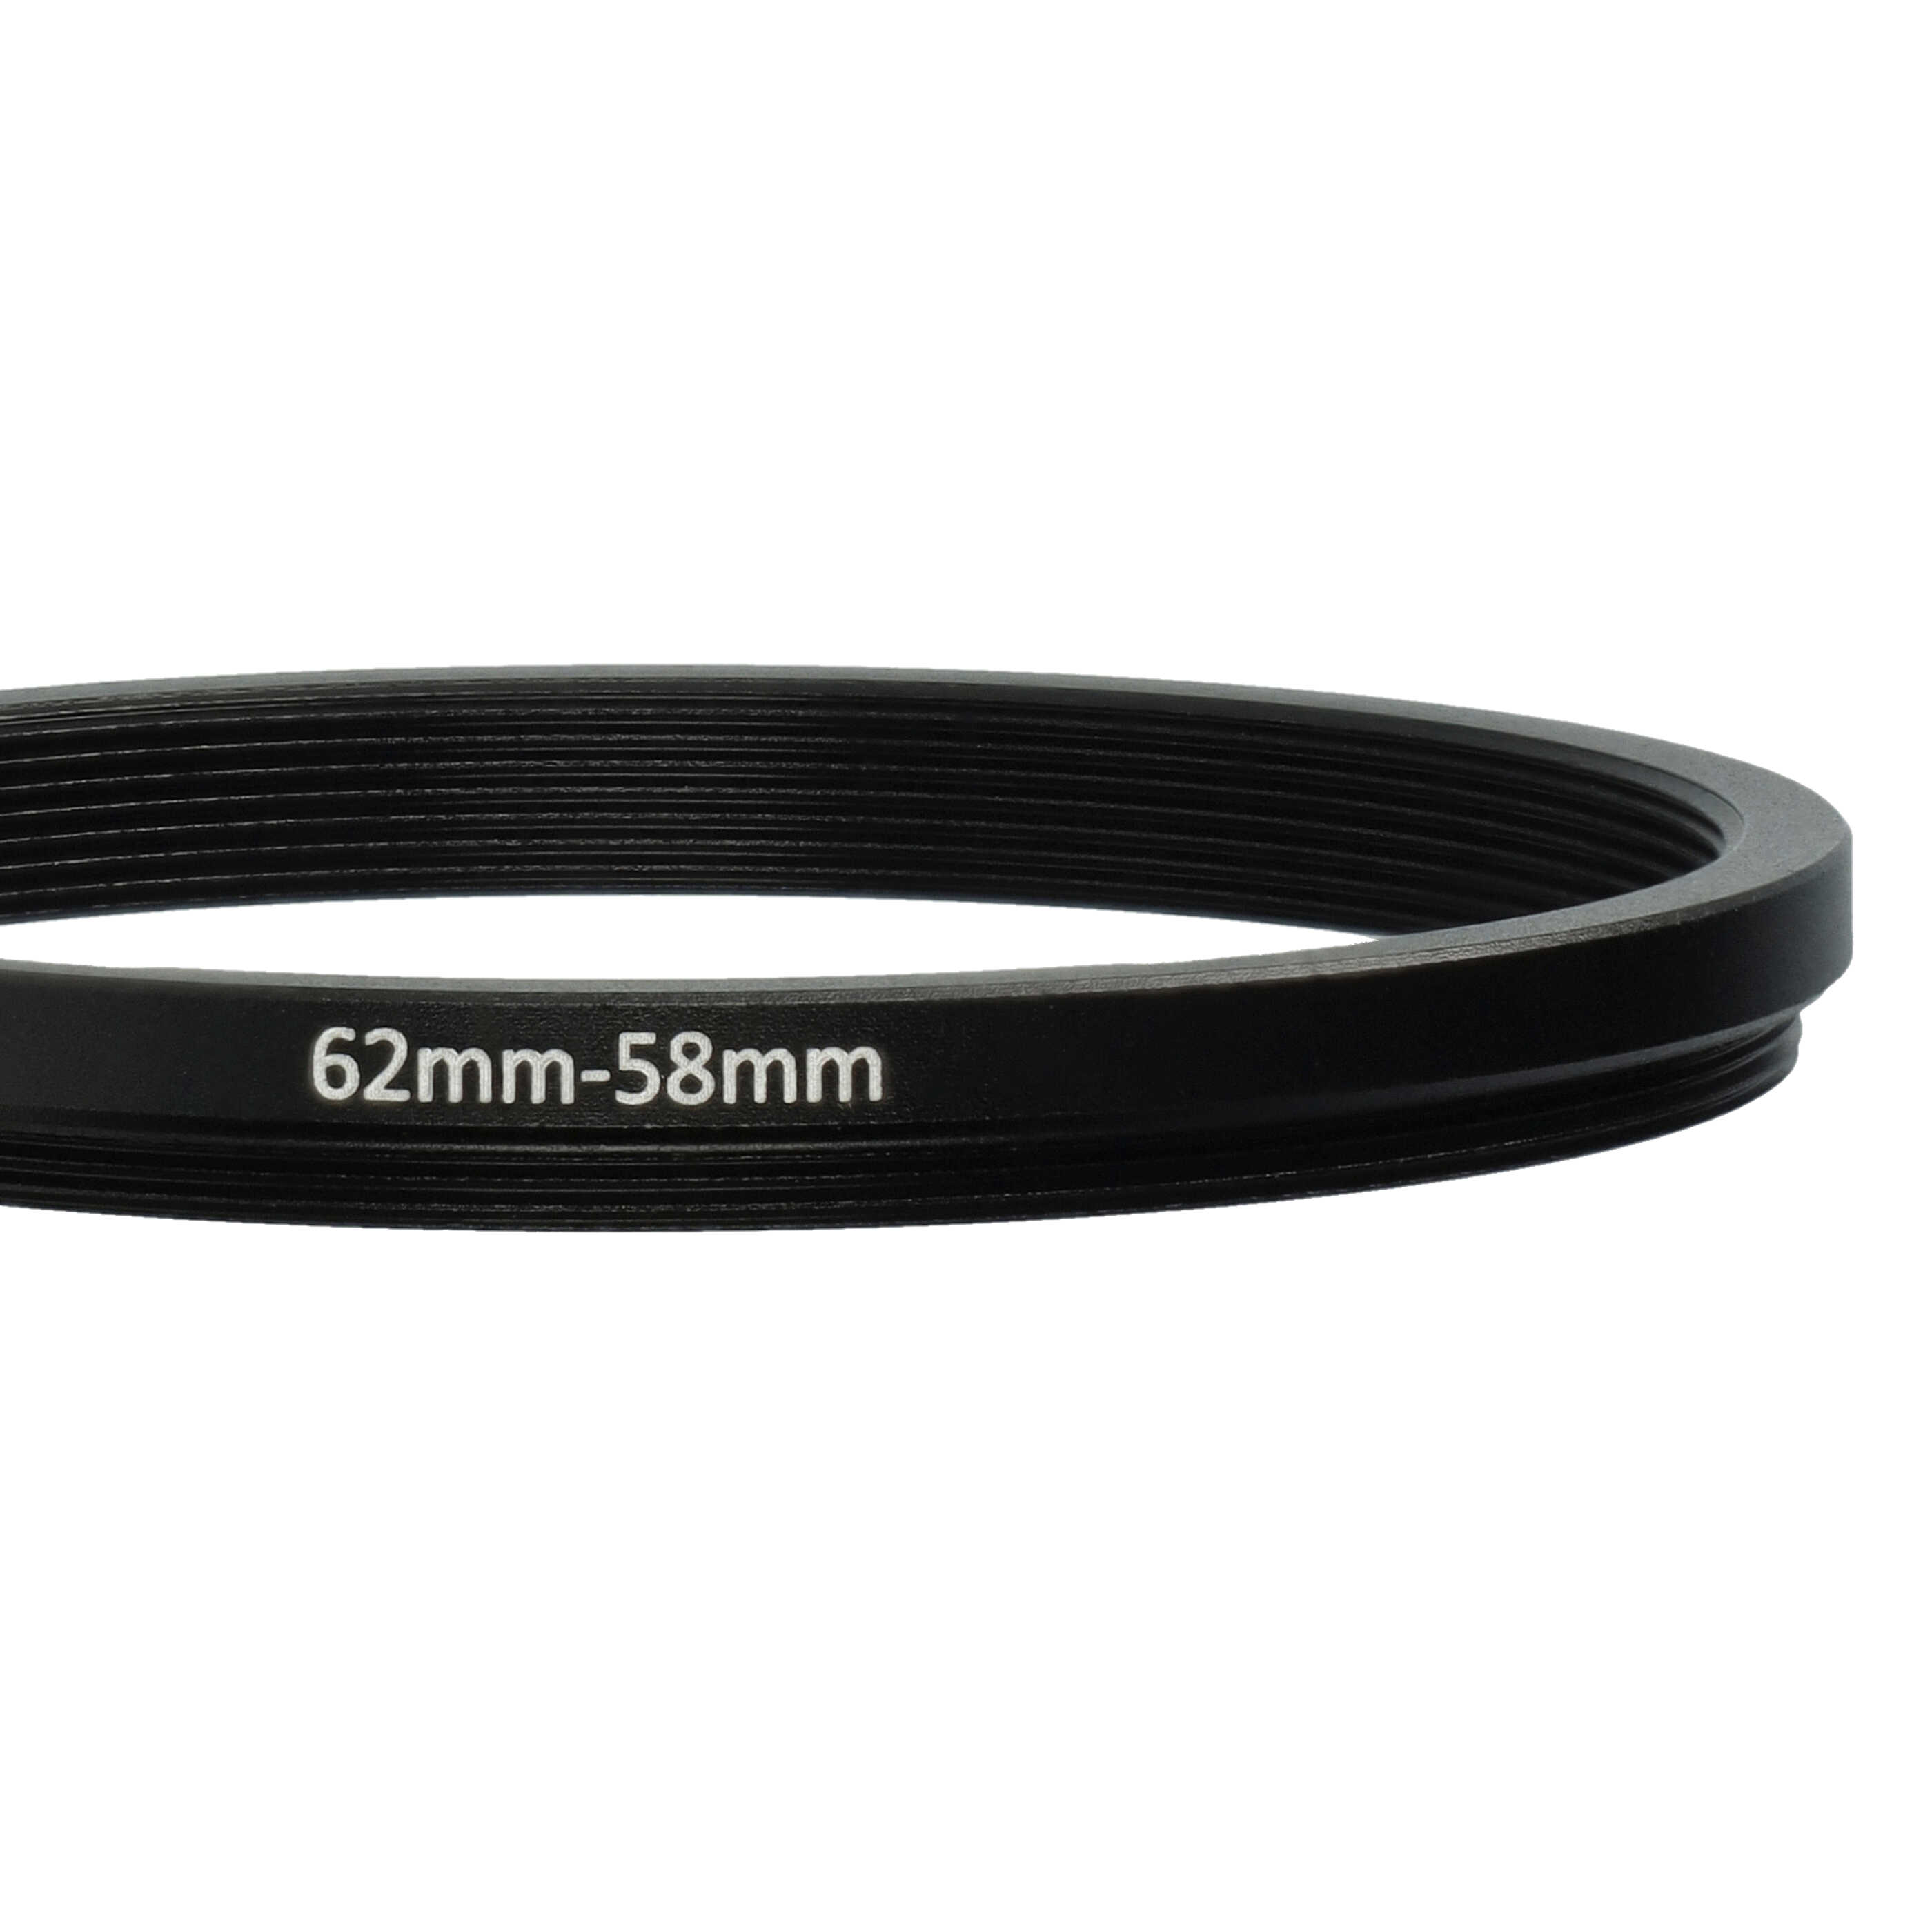 Anello adattatore step-down da 62 mm a 58 mm per obiettivo fotocamera - Adattatore filtro, metallo, nero